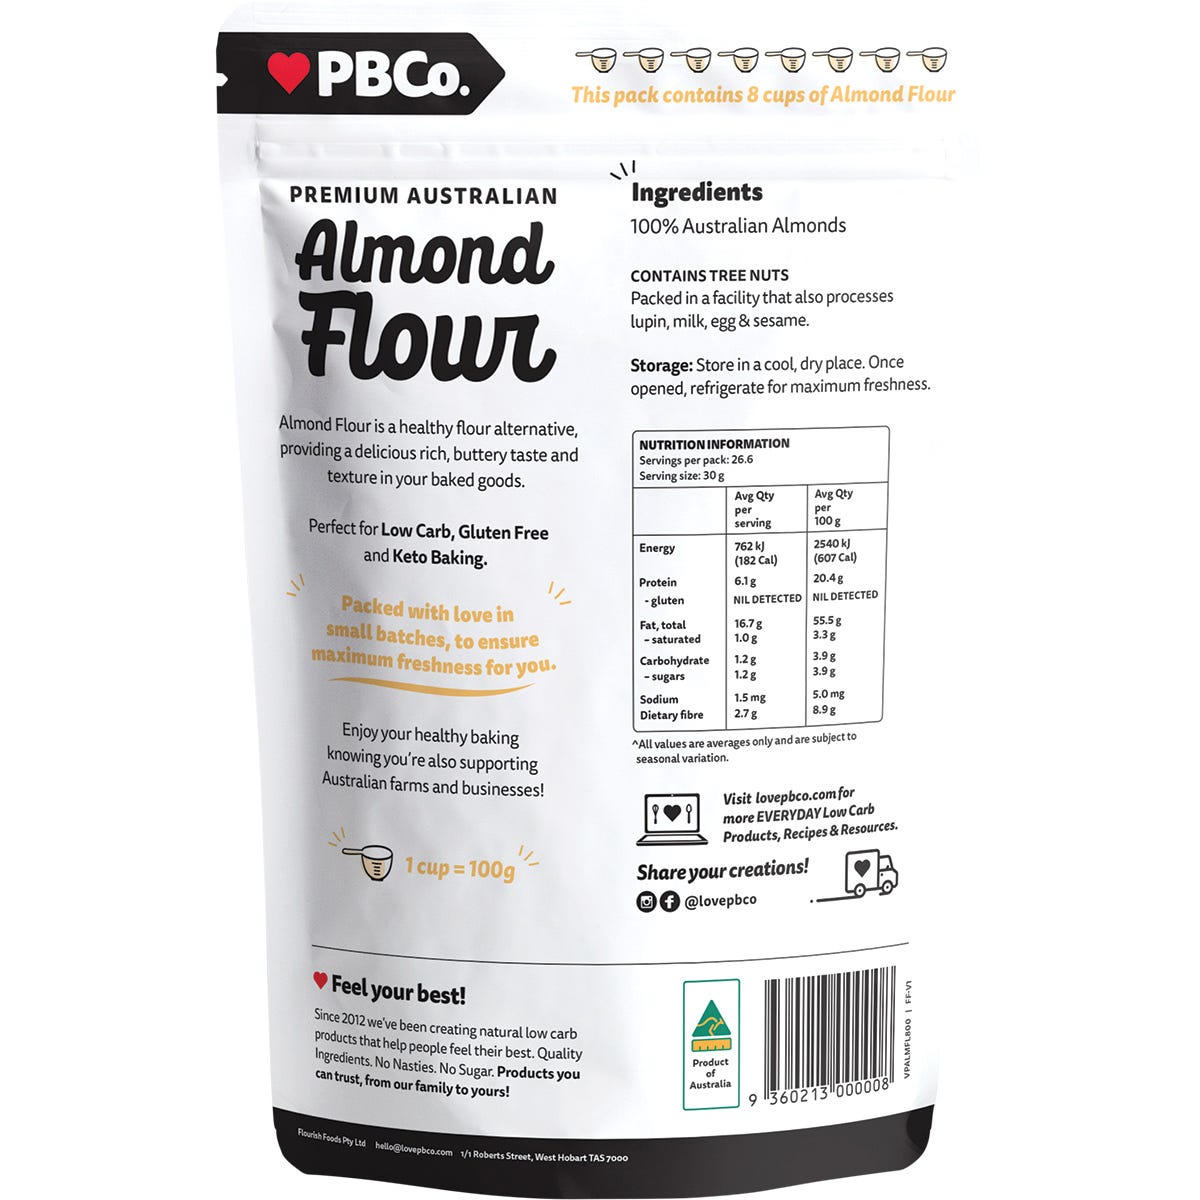 PBco Almond Flour Premium Australian